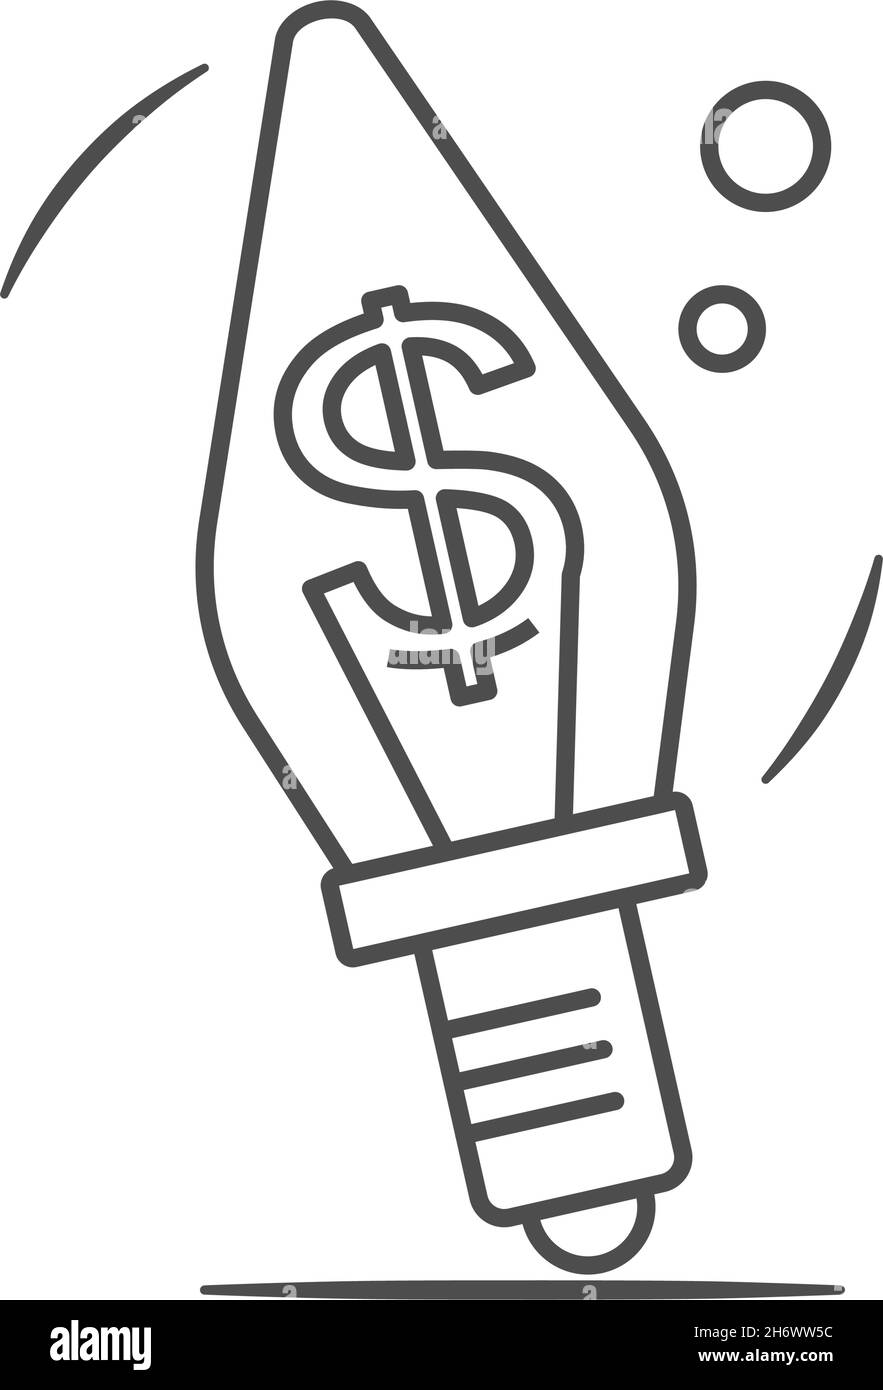 US Dollar Zeichen in einer Glühbirne. Wirtschafts-, Finanz- und Bankkonzept. Symbol für dünne Linien umreißen. Isoliert auf weißem Hintergrund. Stock Vektor